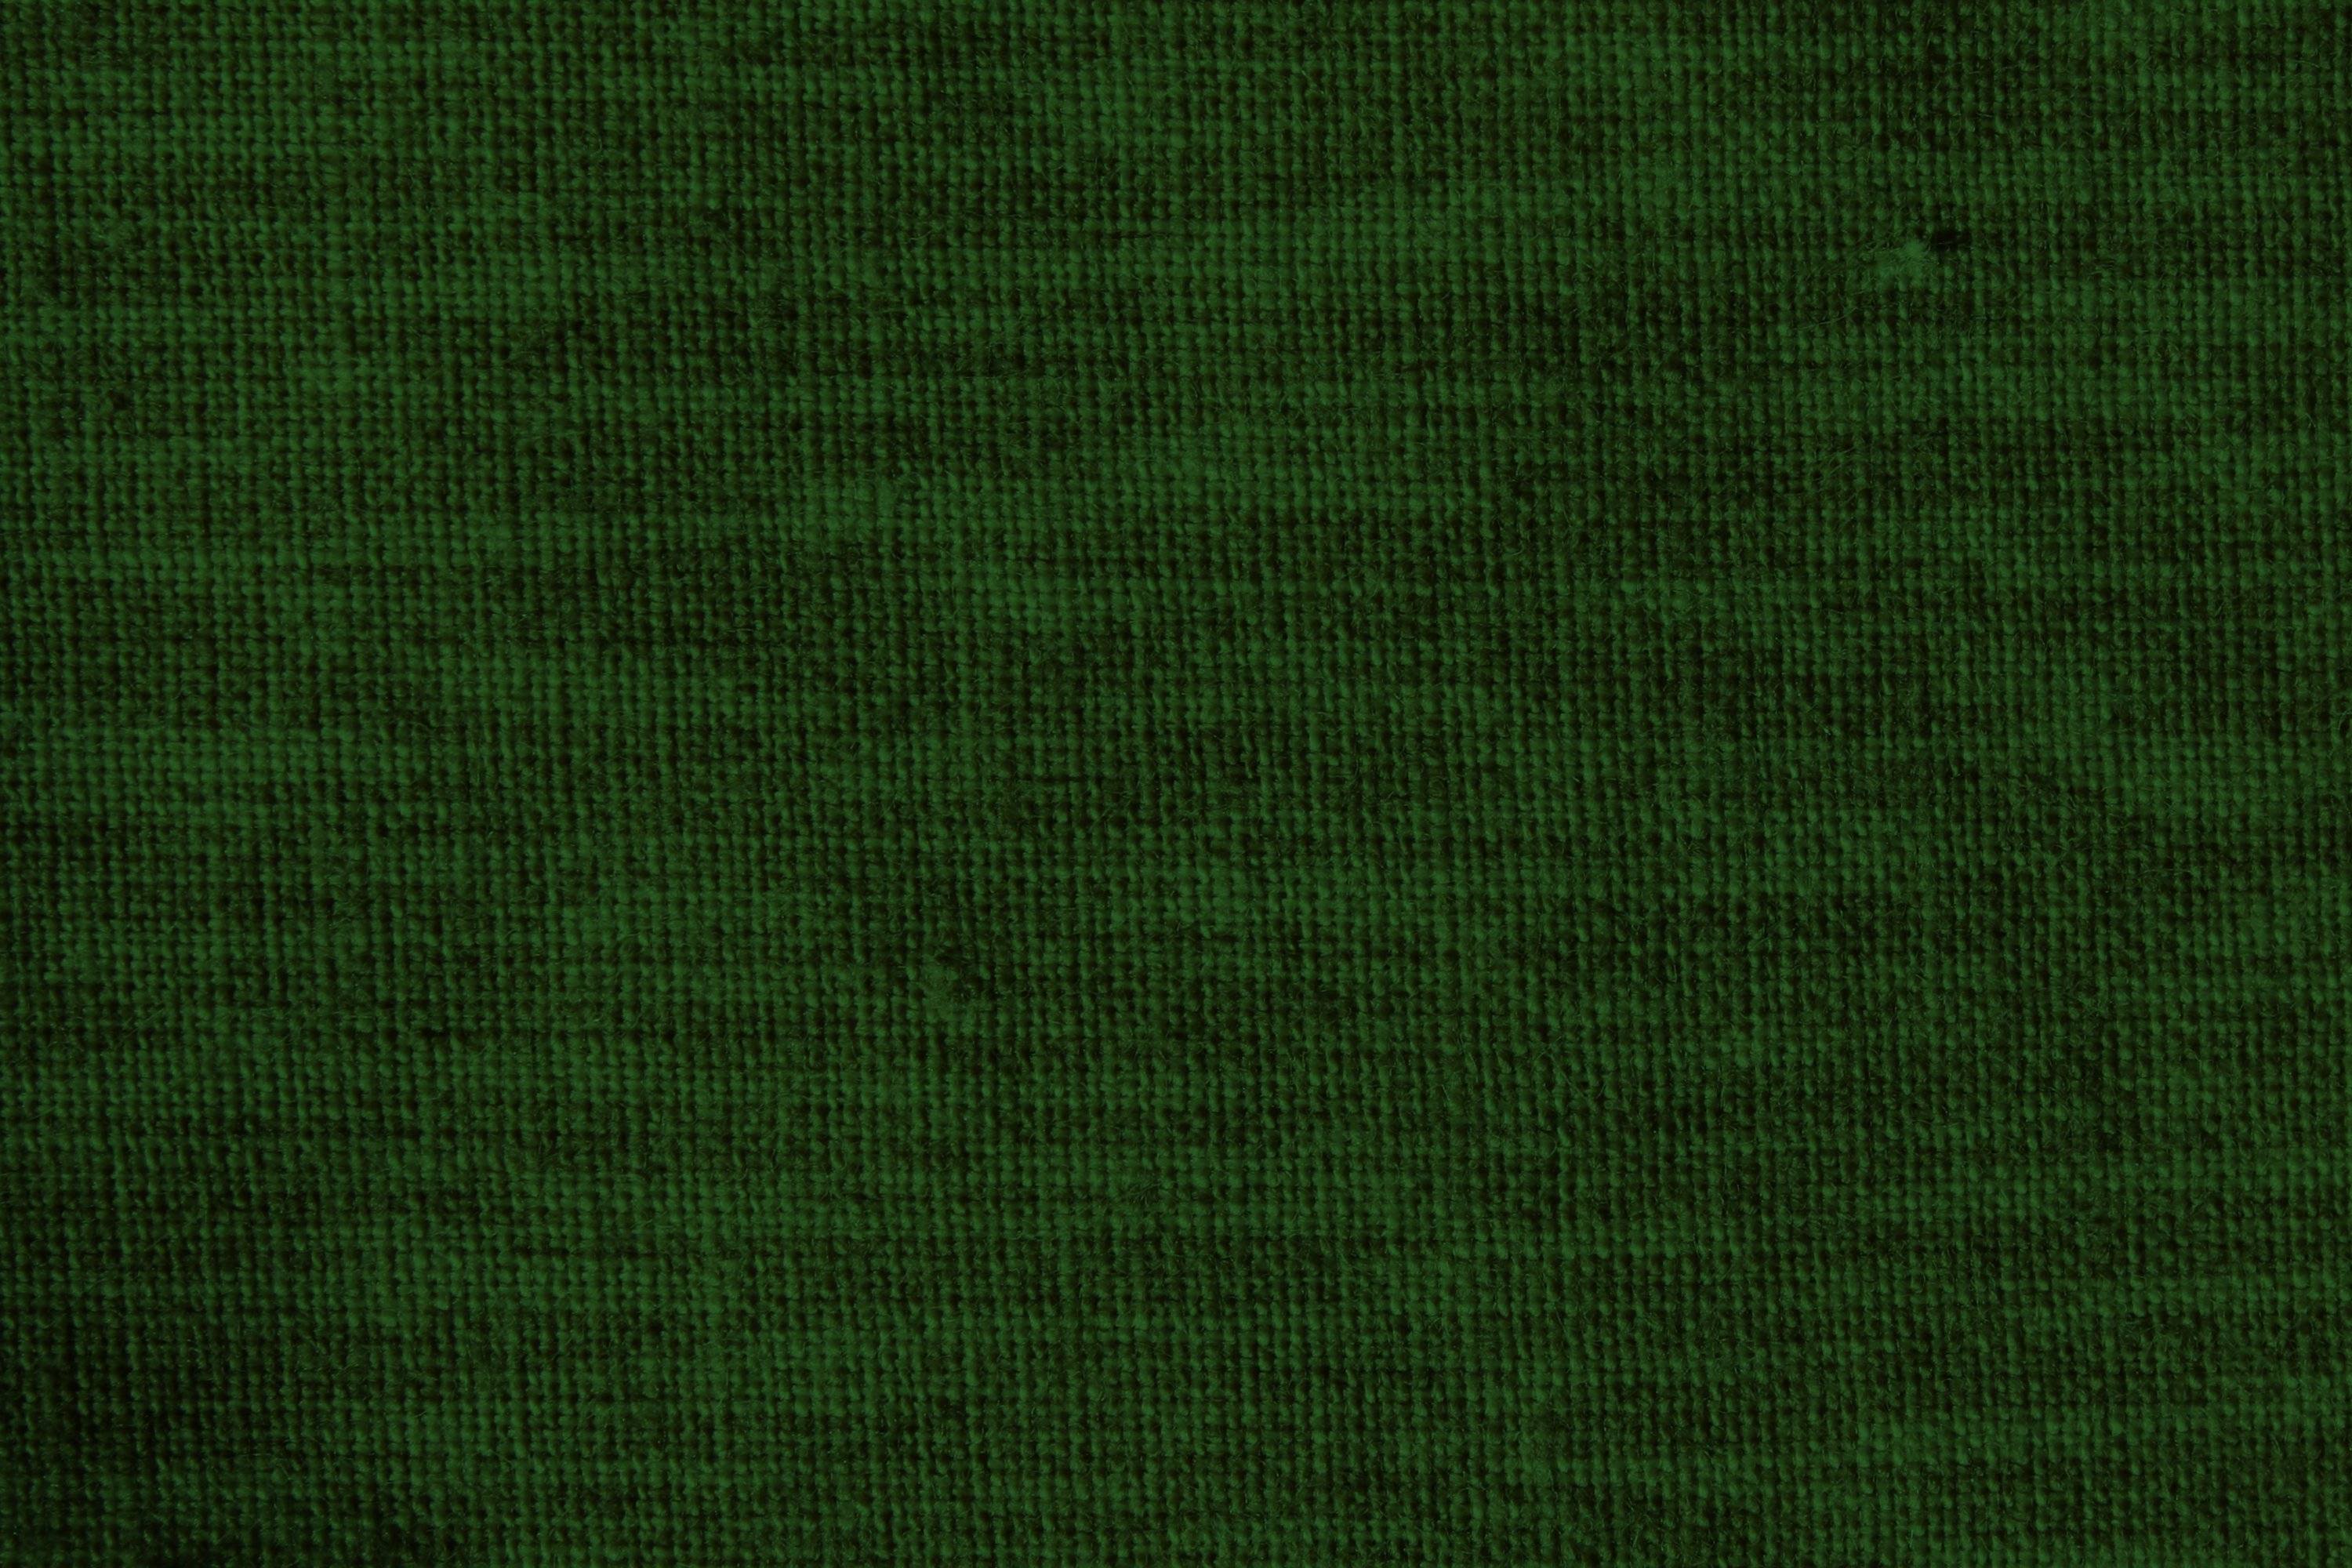 Dark Green 16 192484 Image HD Wallpaper. Wallfoy.com